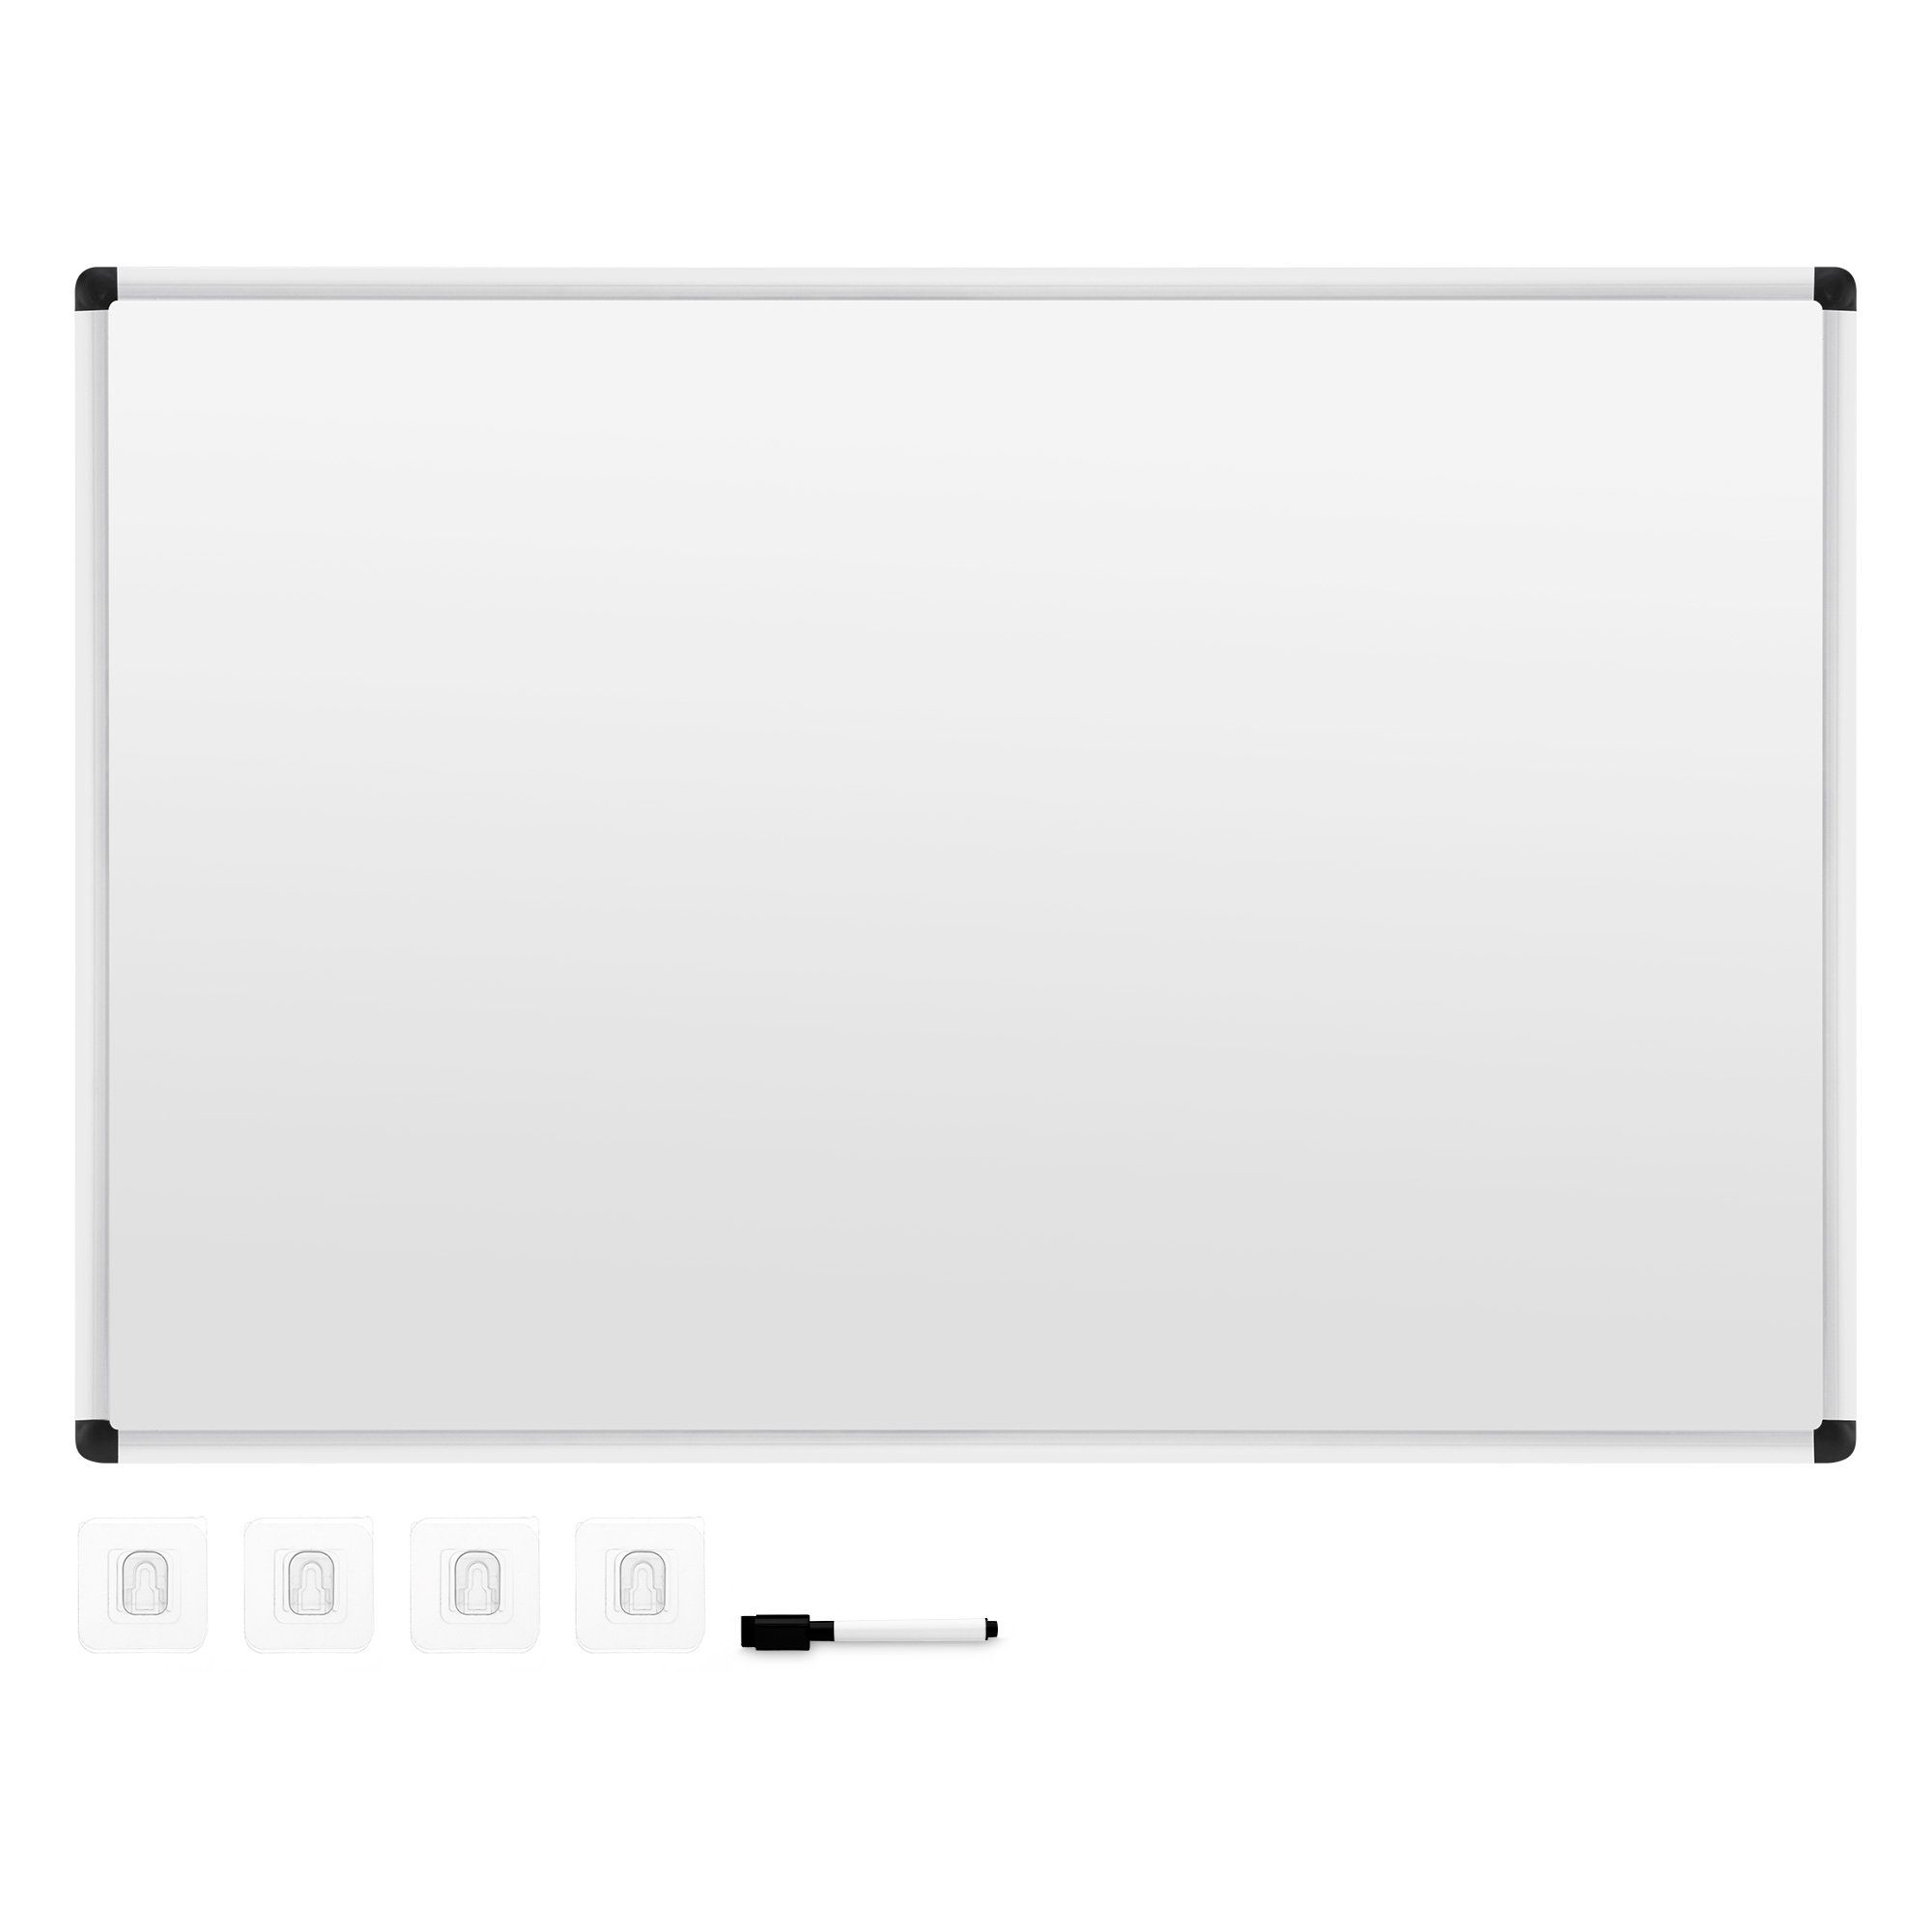 Navaris Memoboard Kombiboard Tafel mit Aluminium Rahmen - Whiteboard/Magnettafel